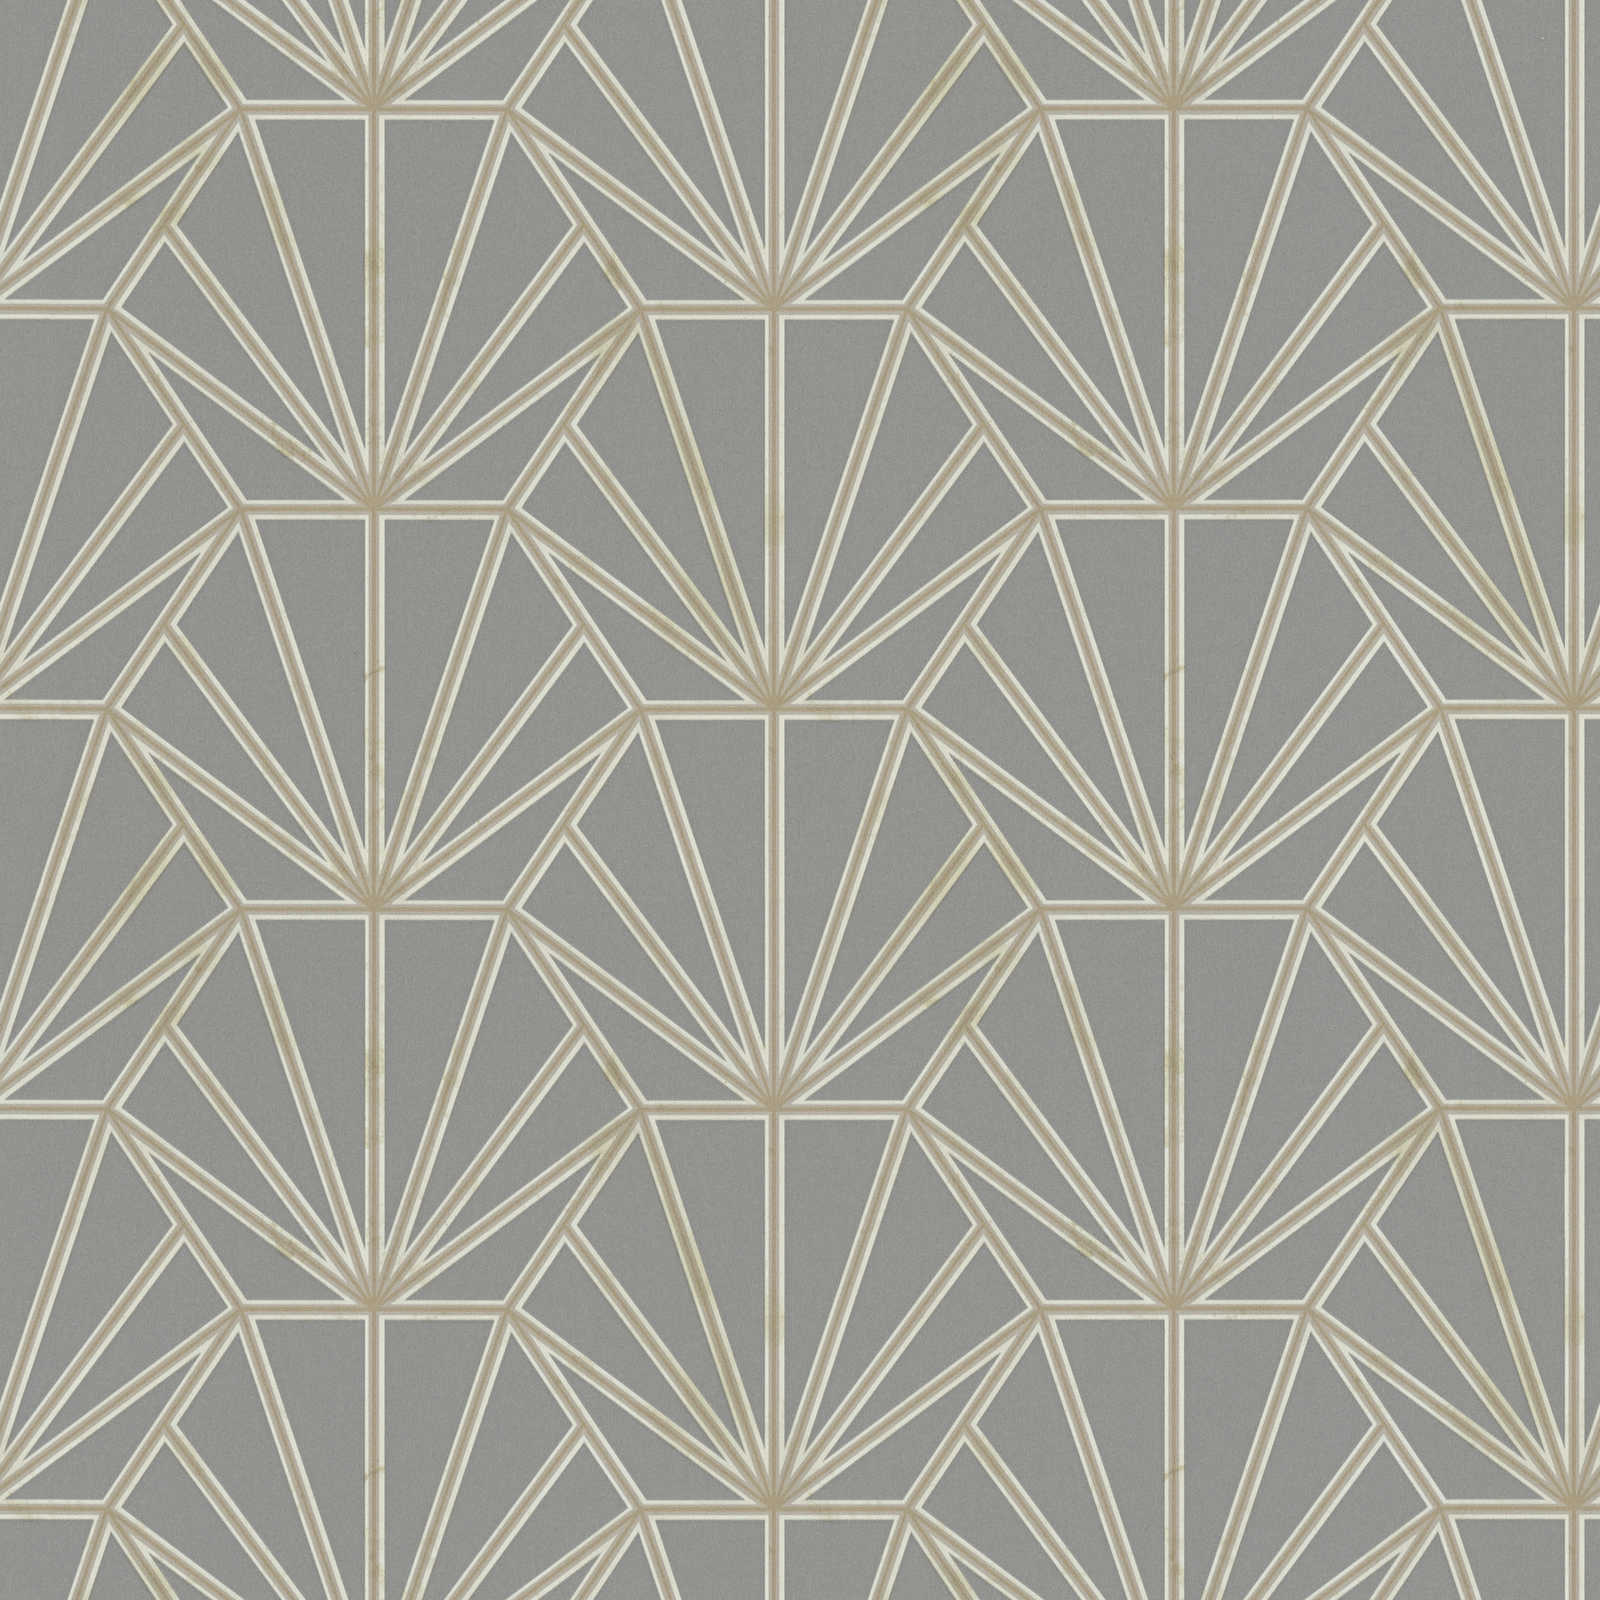 Tapete Art Déco Muster und Linienmotiv – Grau, Gold, Weiß
